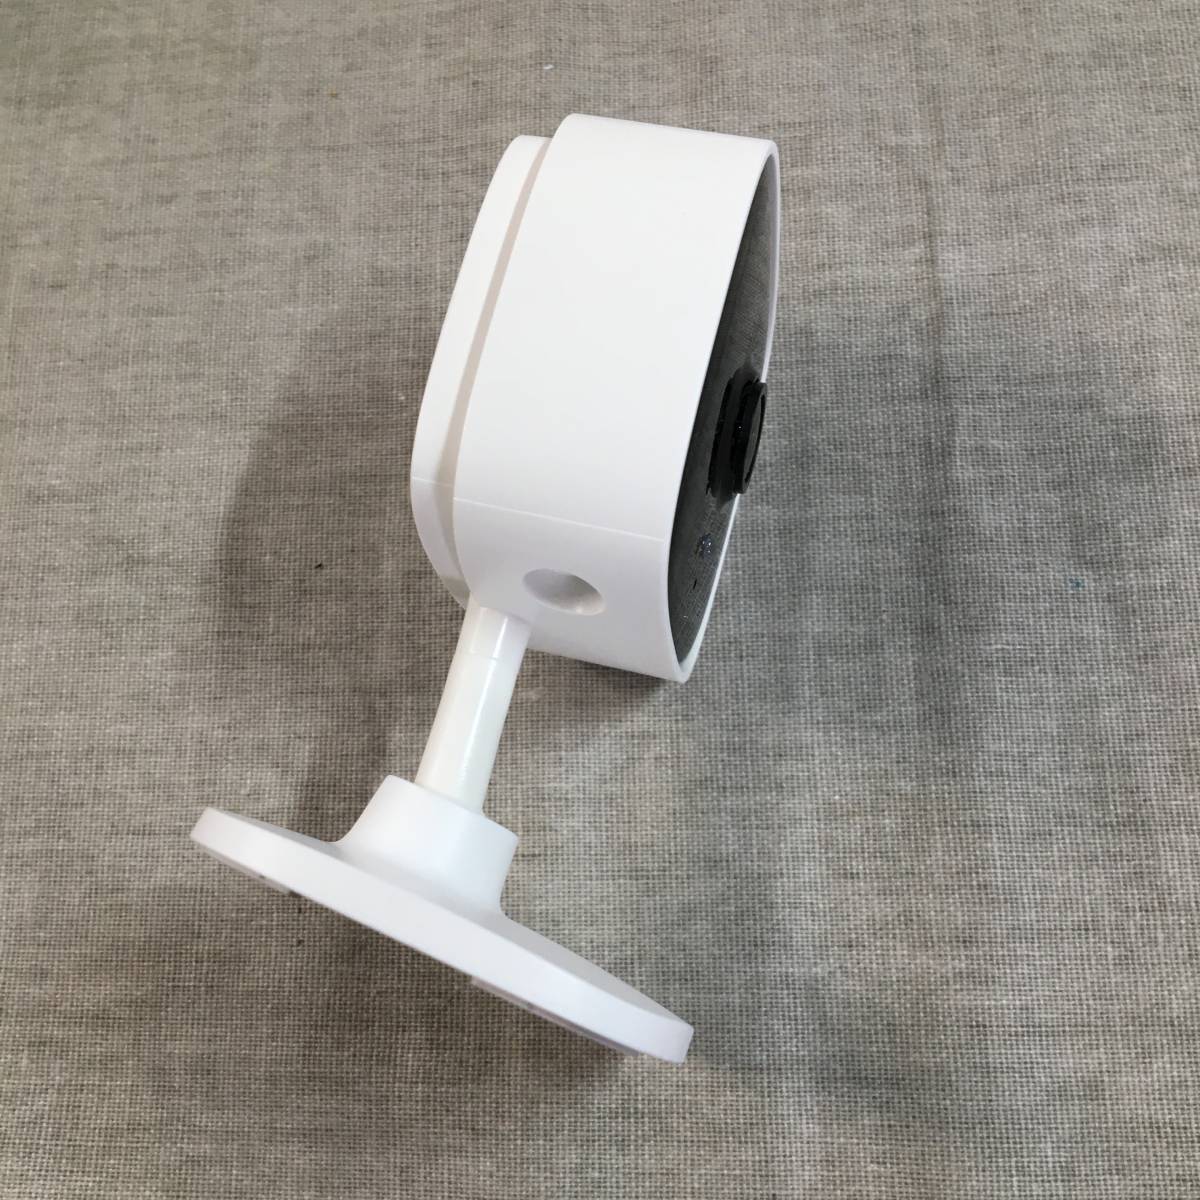  текущее состояние товар TP-Link WiFi камера micro SD соответствует 1080p прибор ночного видения работа обнаружение интерактивный телефонный разговор Tapo C100/A